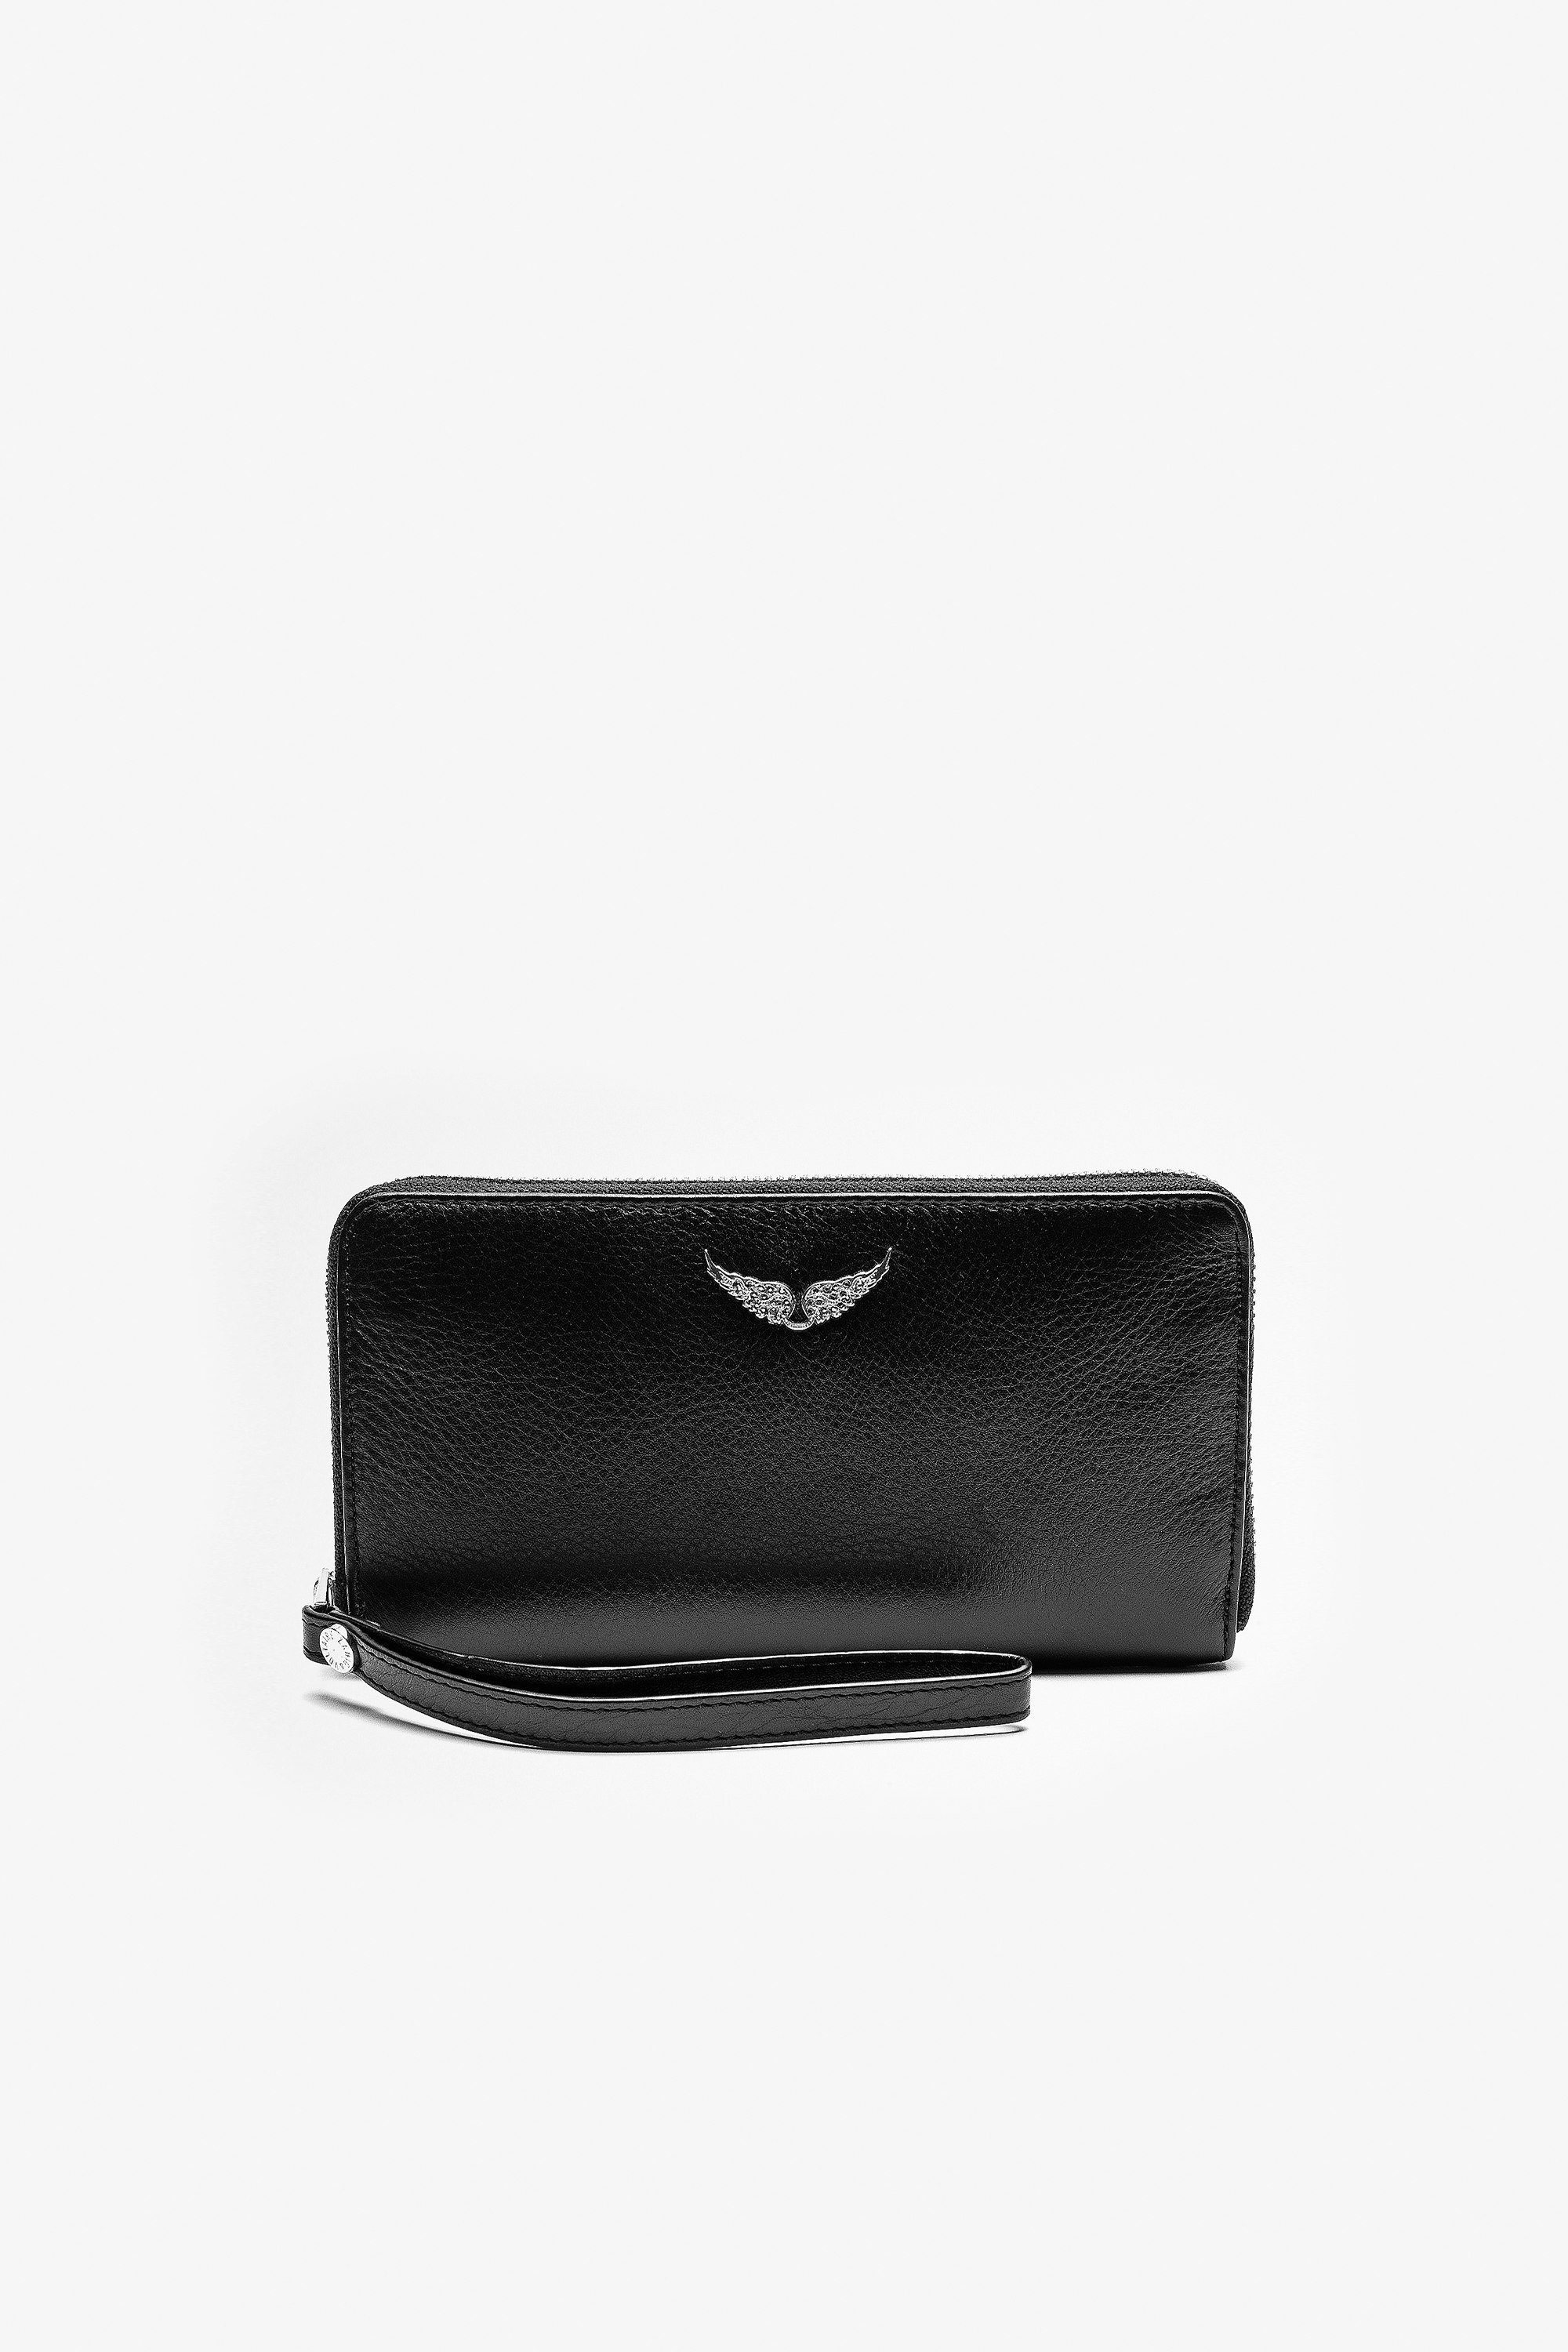 Brieftasche Compagnon Damen-Portemonnaie aus schwarzem Leder.